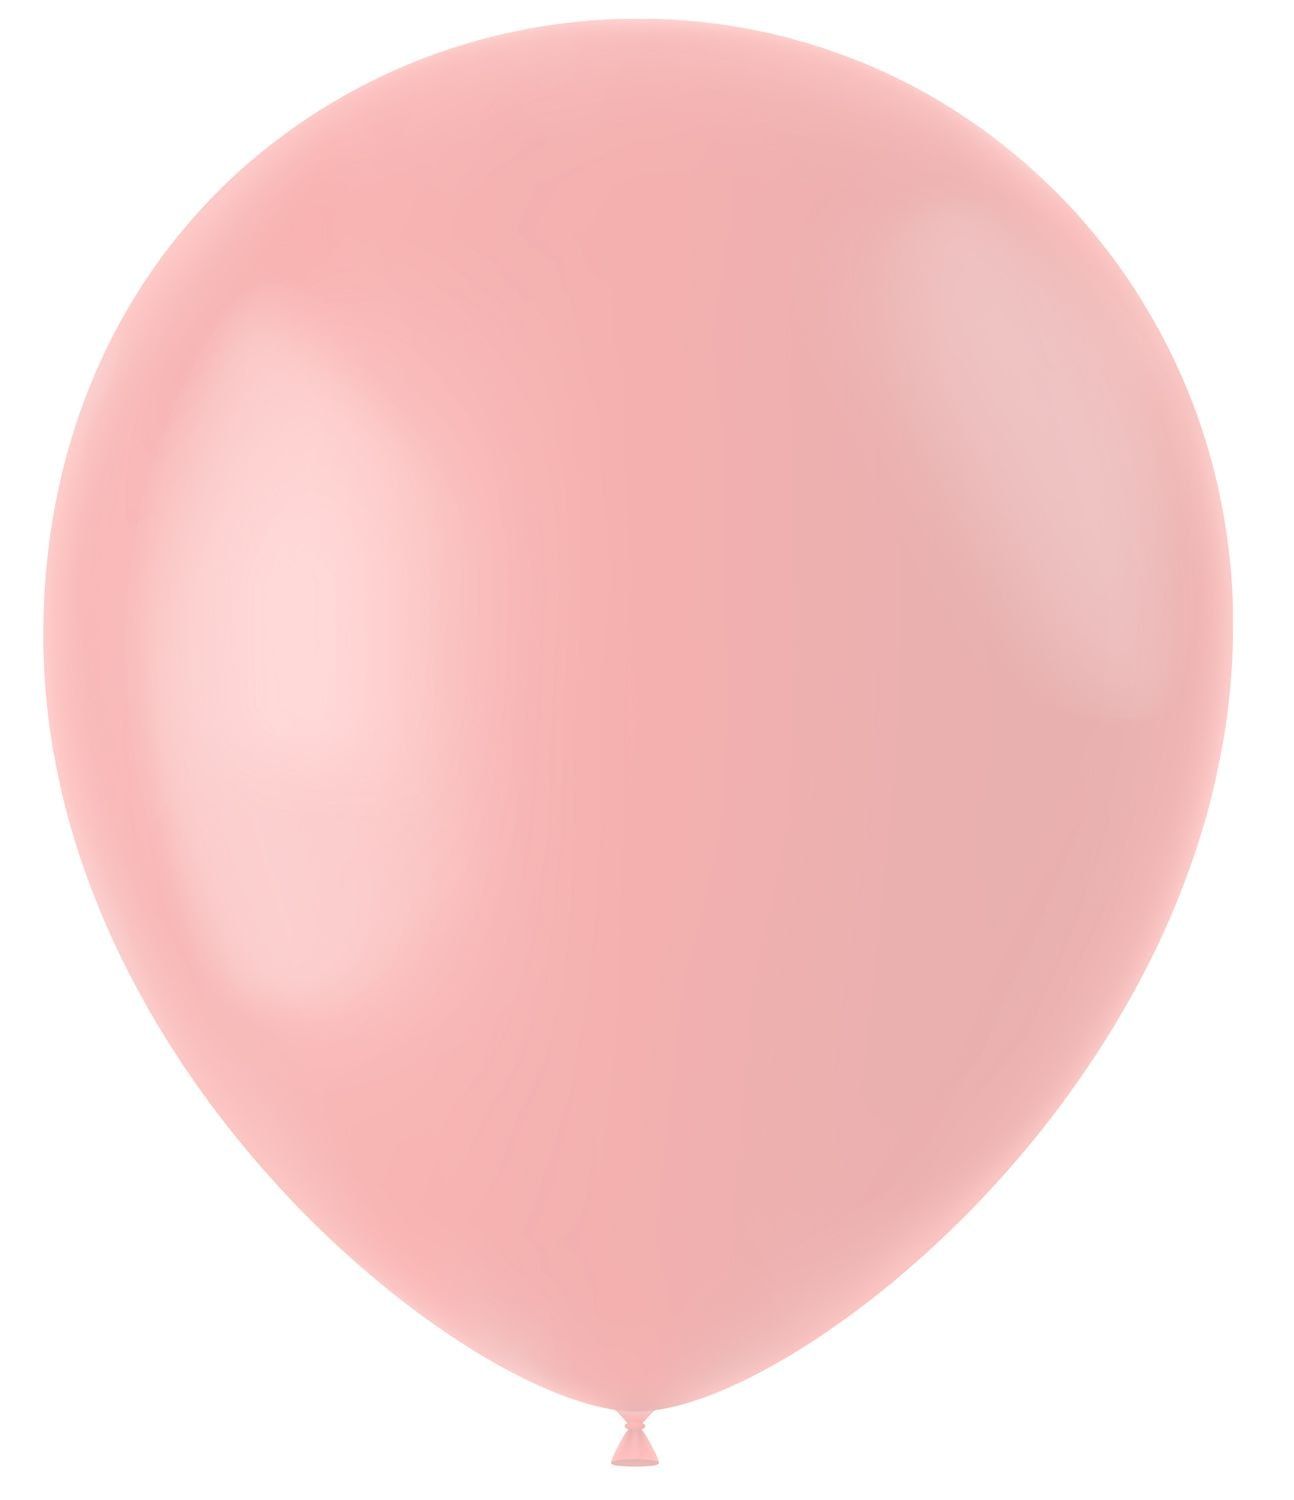 Powder roze mat ballonnen 100 stuks